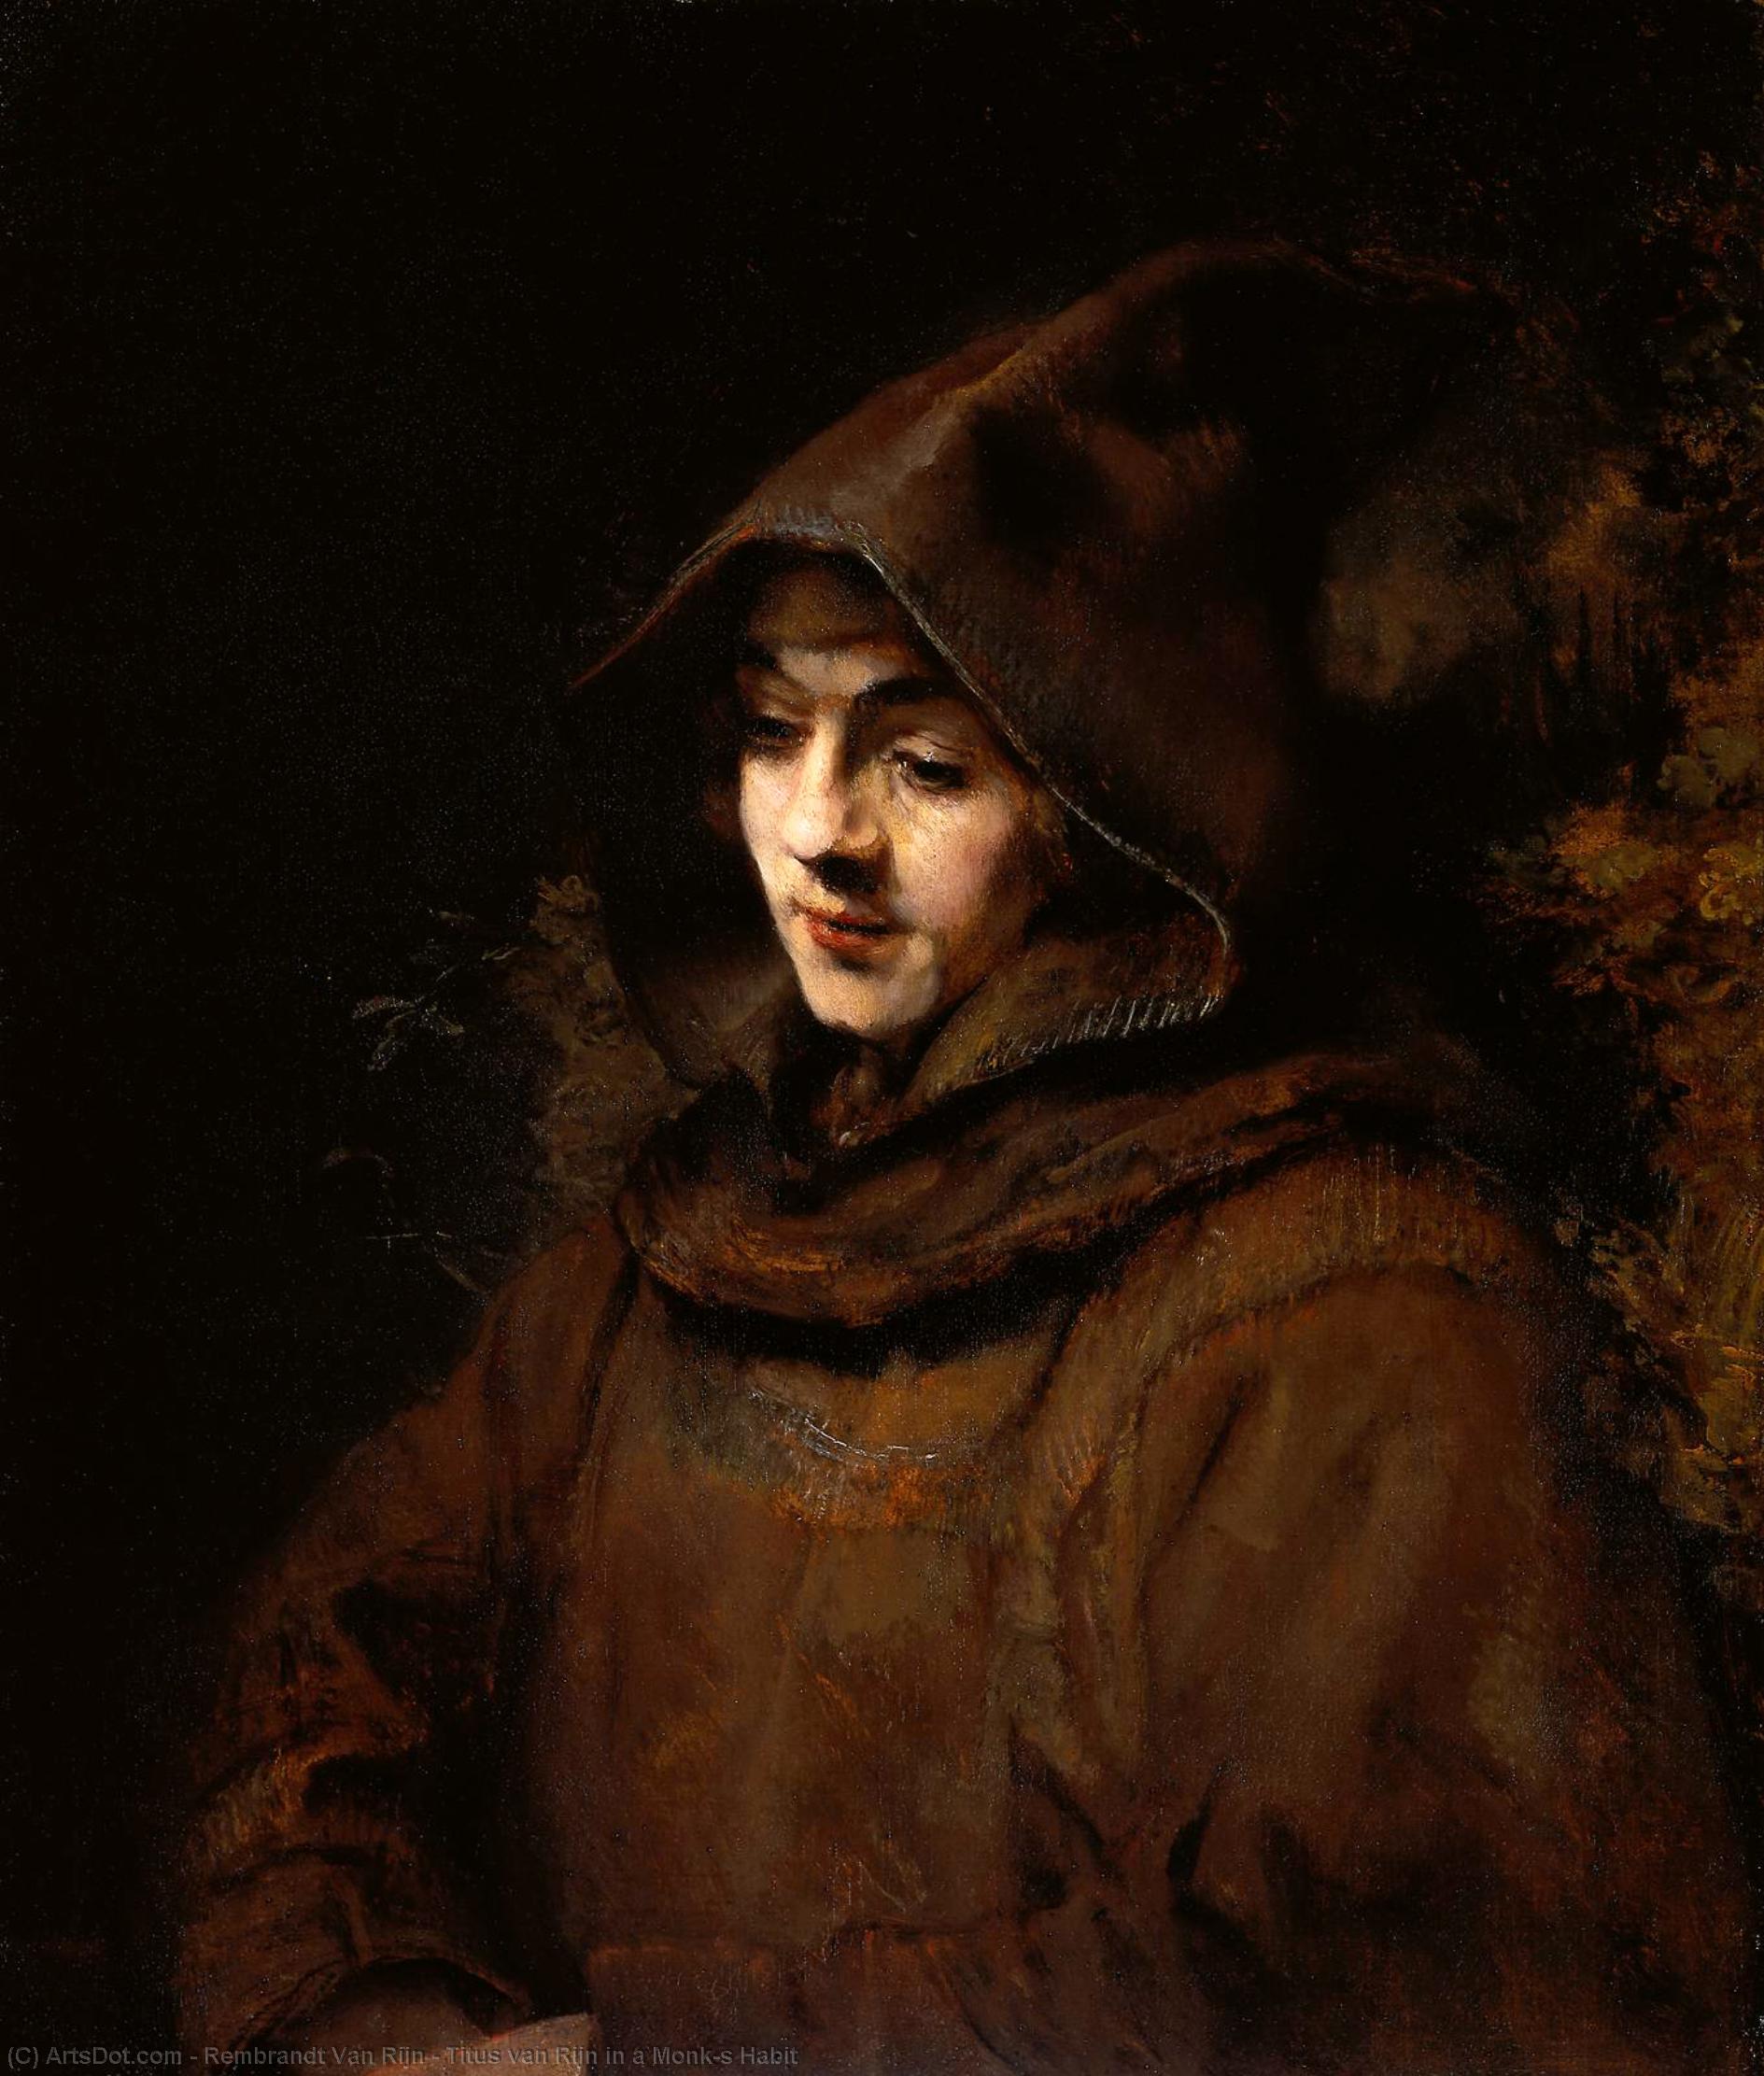 WikiOO.org - Encyclopedia of Fine Arts - Maalaus, taideteos Rembrandt Van Rijn - Titus van Rijn in a Monk's Habit